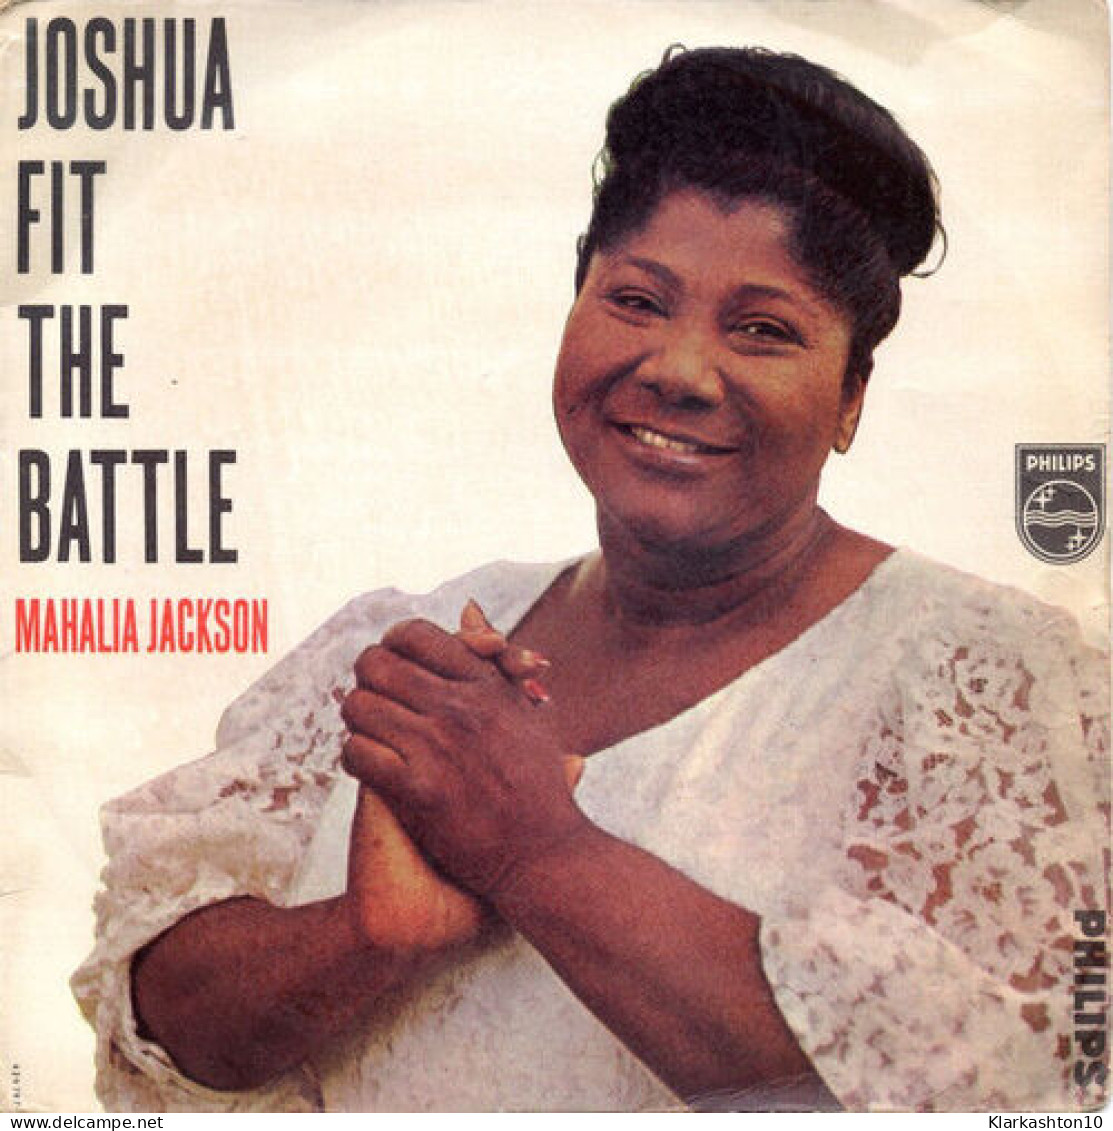 Joshua Fit The Battle - Unclassified